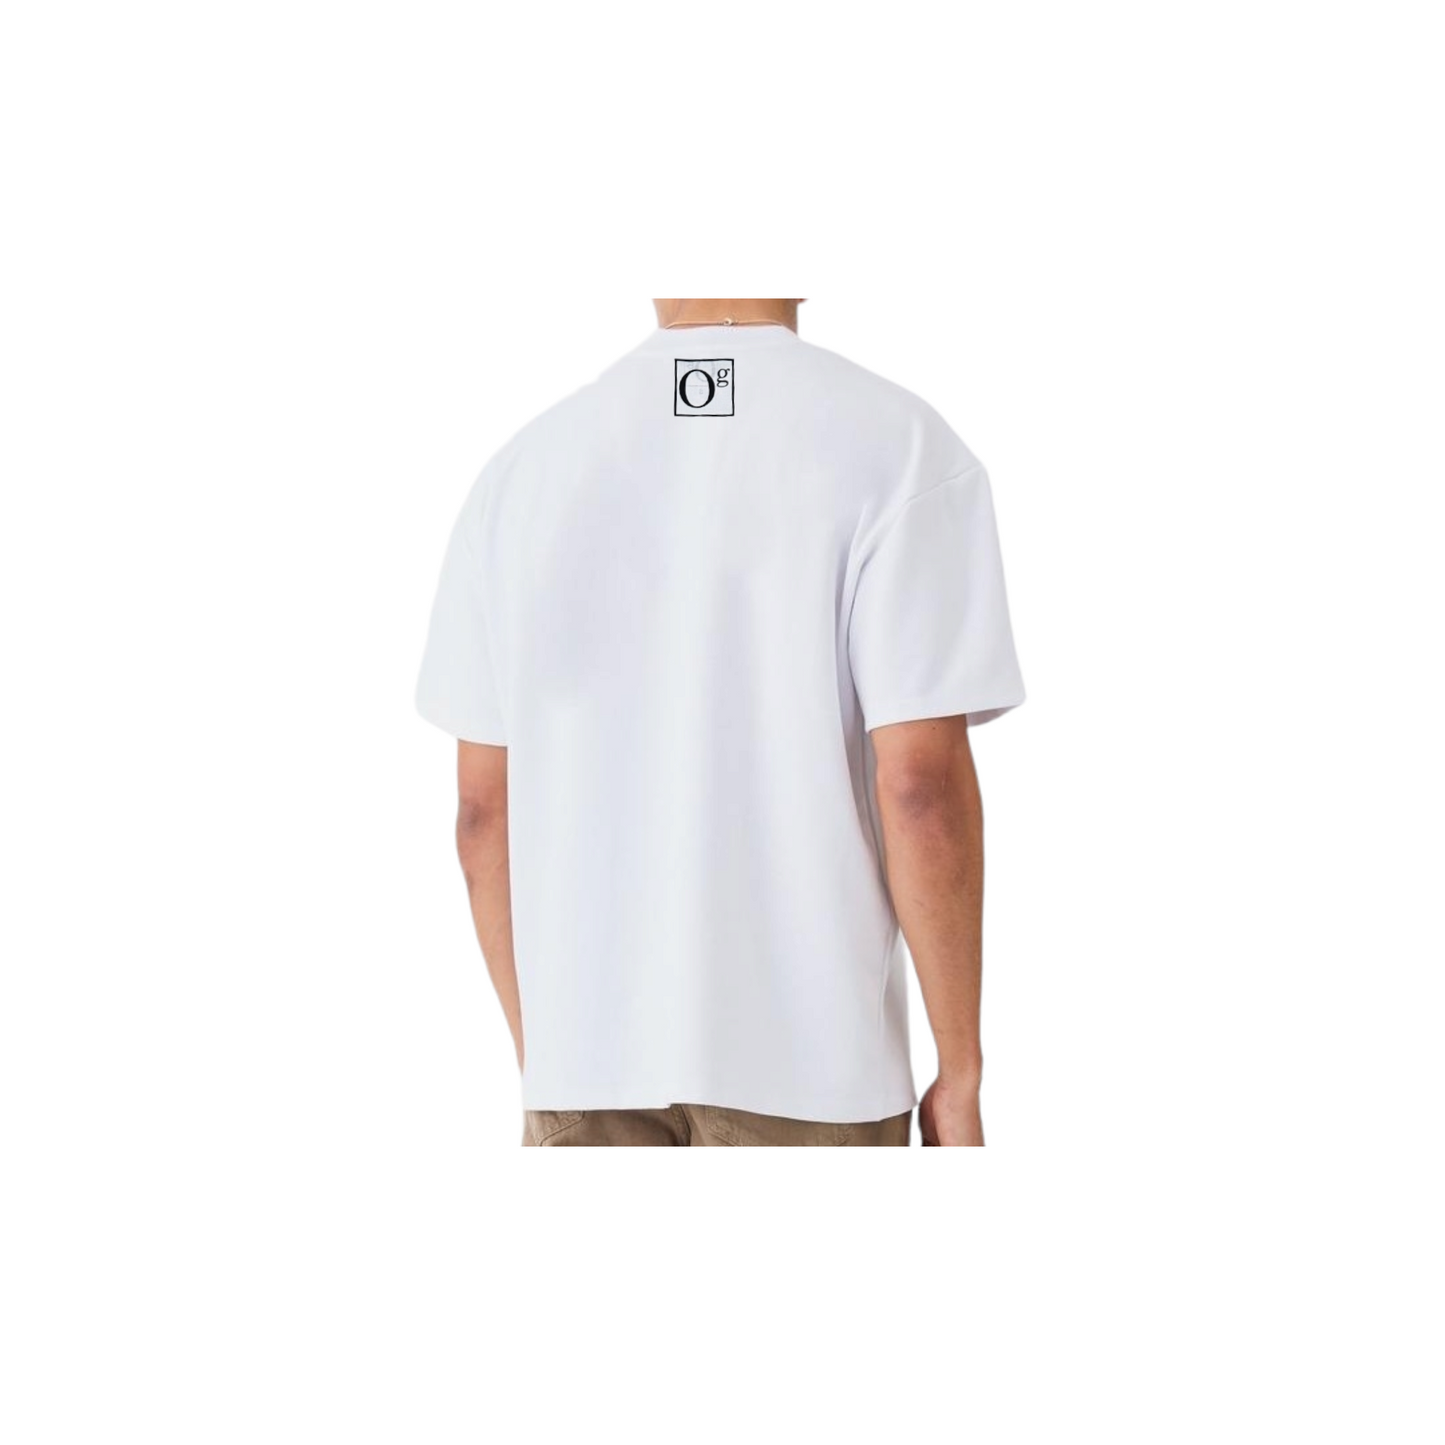 oG Signature T-Shirt White